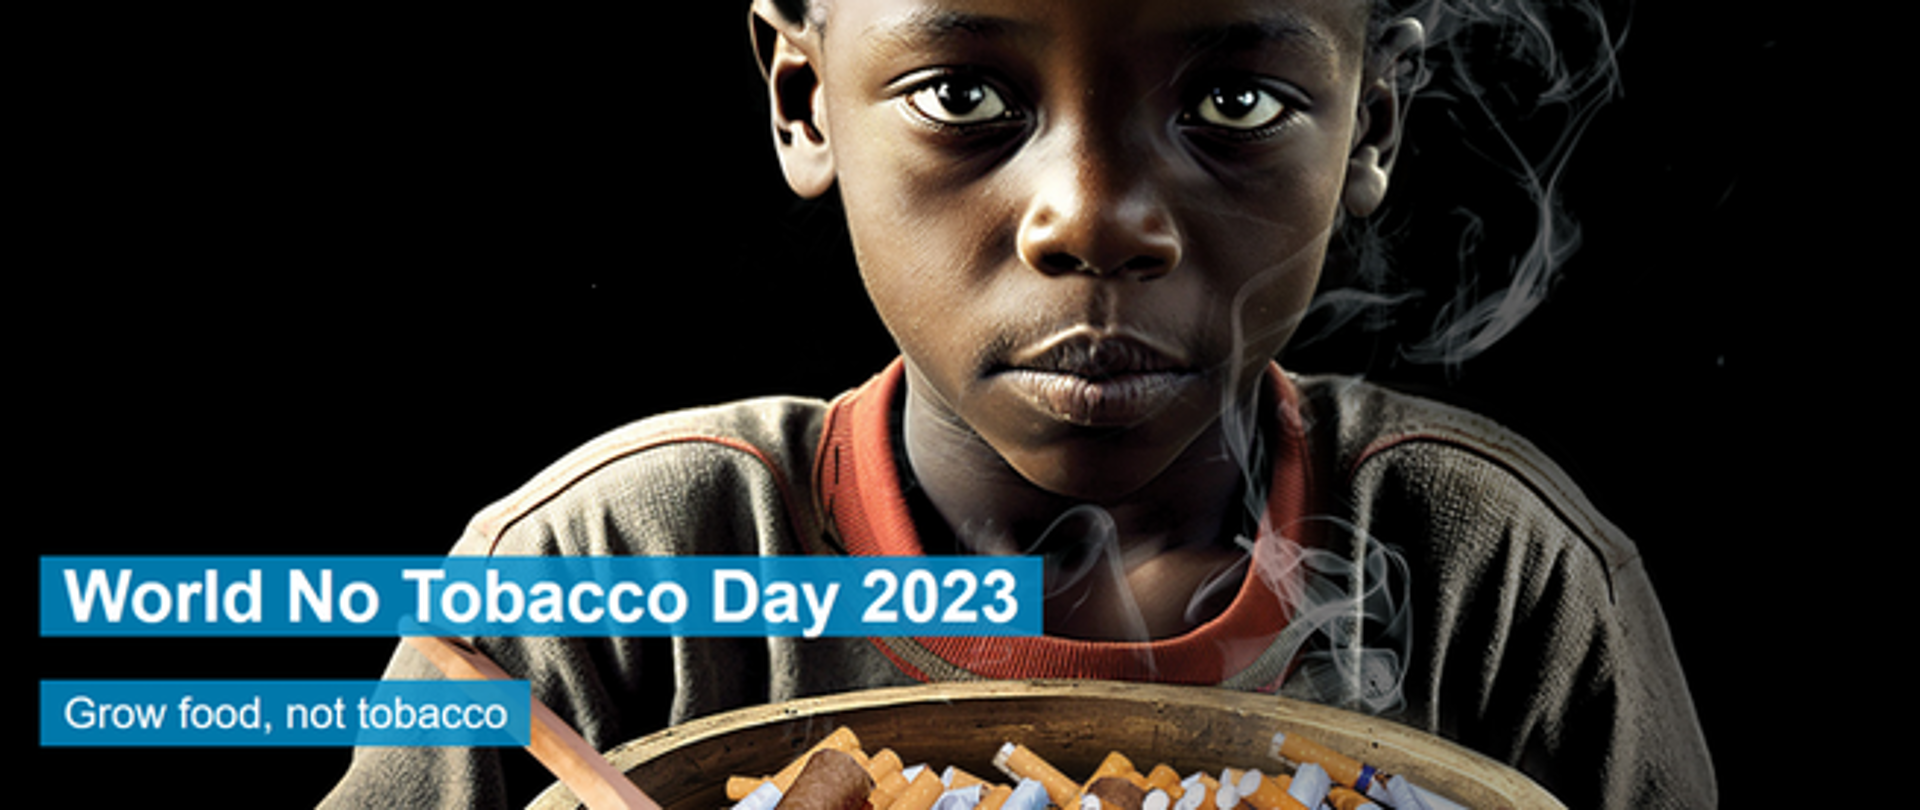 Chłopiec trzymający miskę, w której znajdują się papierosy i cygara, z miski unosi się dym.